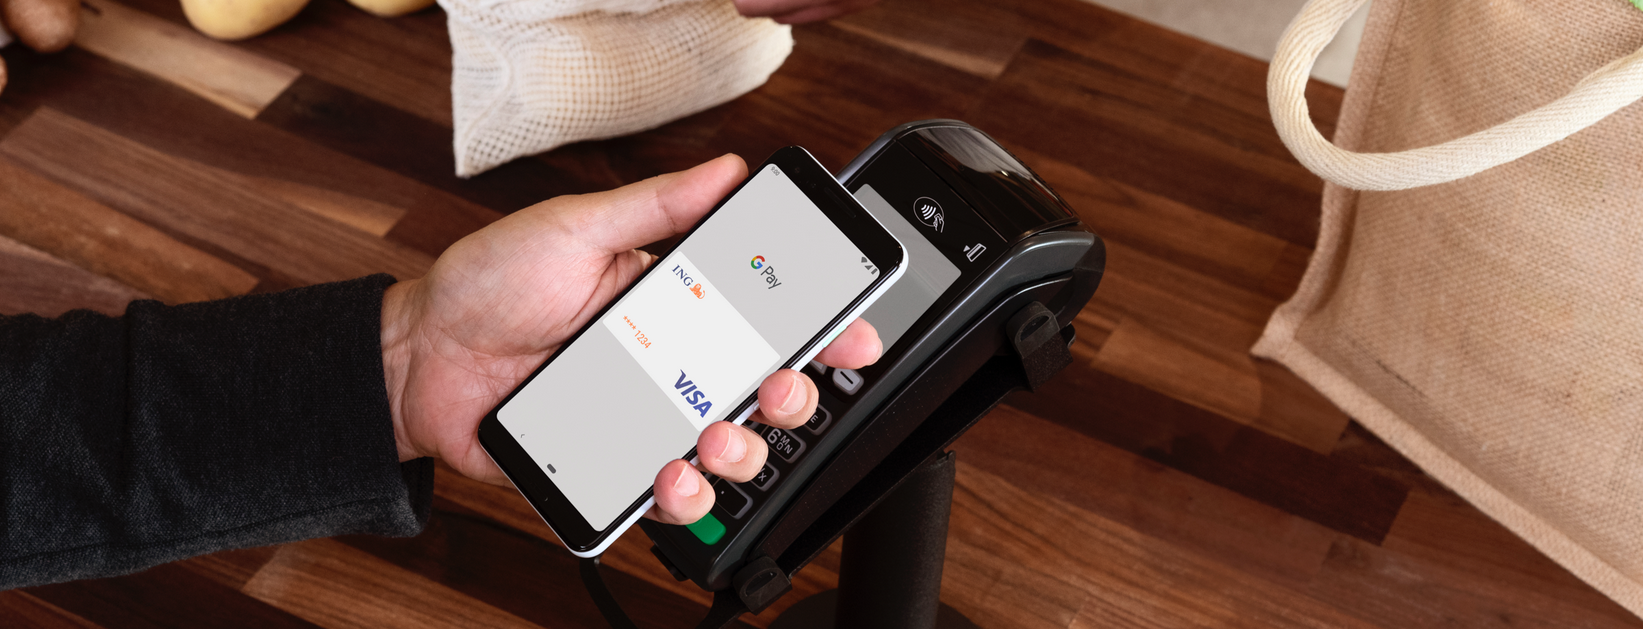 Smartphone mit Google-Pay-Anzeige wird an Kartenleser gehalten.